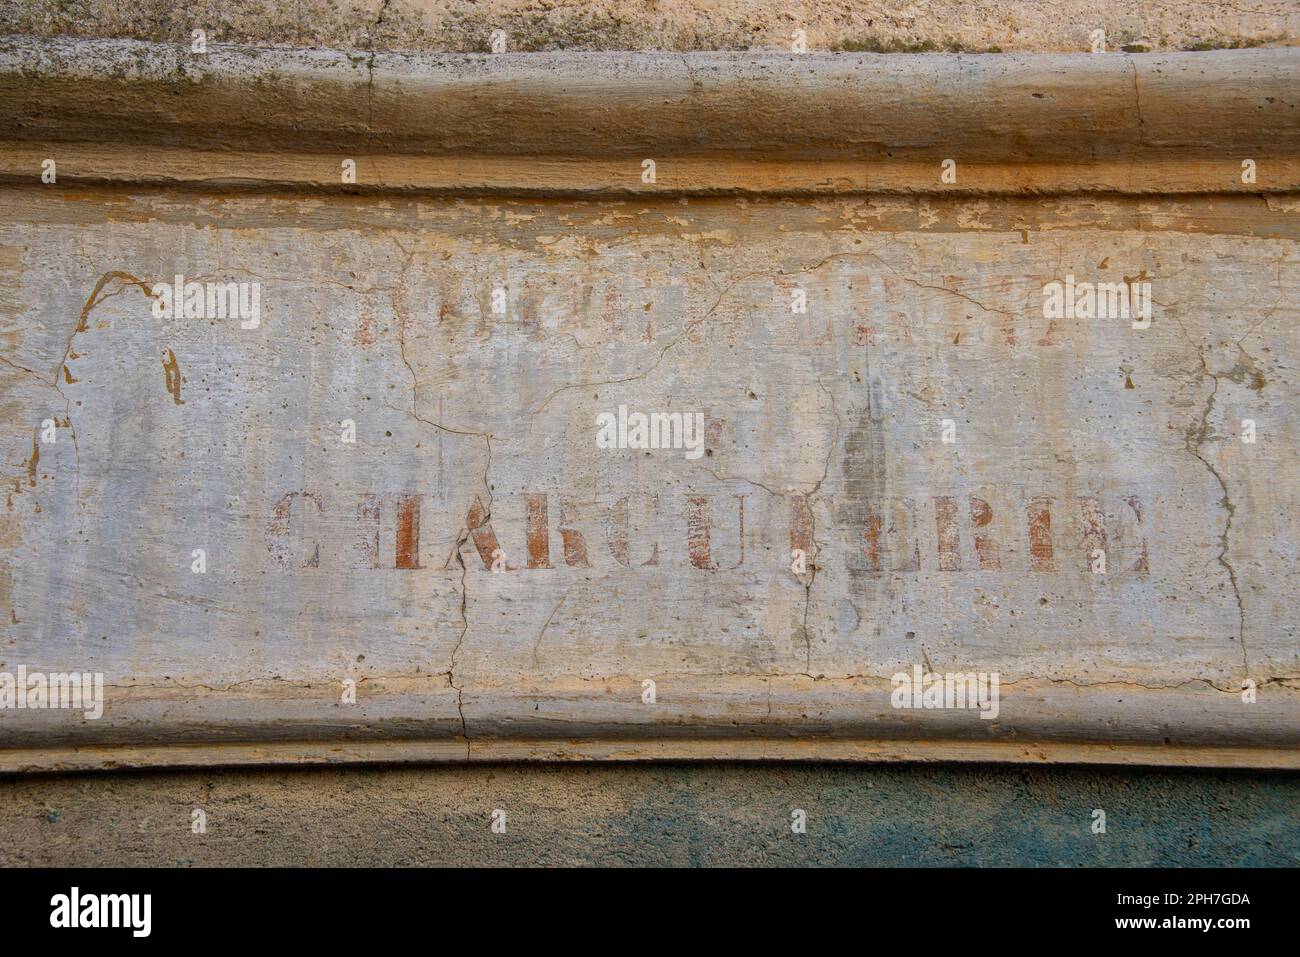 Salumi: Un segno sbiadito di un macellaio su una facciata nel vecchio villaggio Roquebrun nella valle del fiume Orb del sud della Francia. Foto Stock